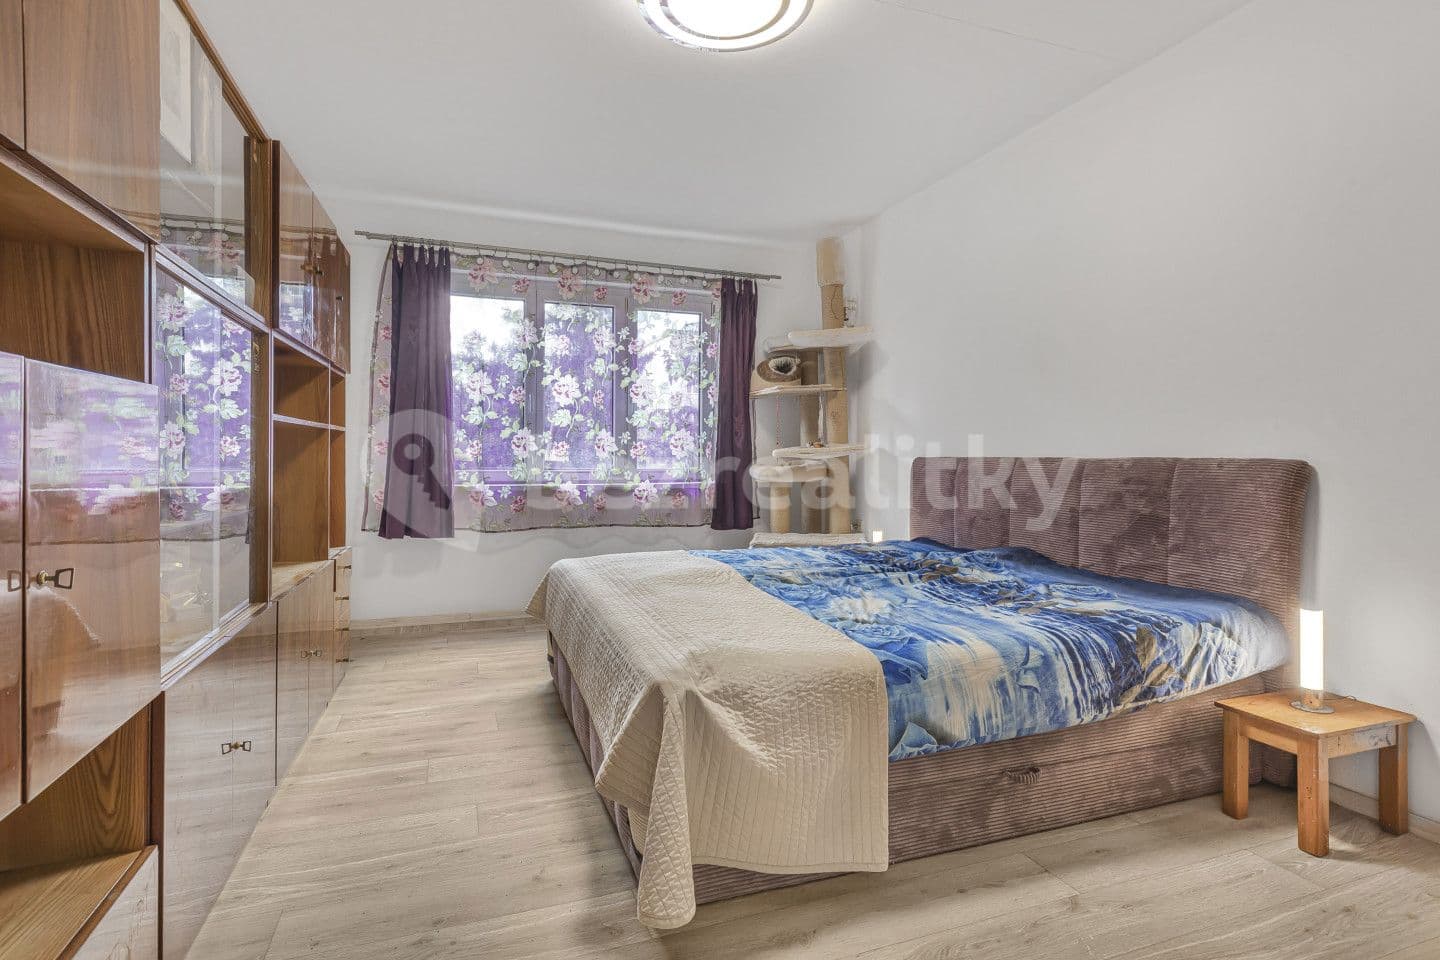 2 bedroom flat for sale, 64 m², Sečská, Prague, Prague